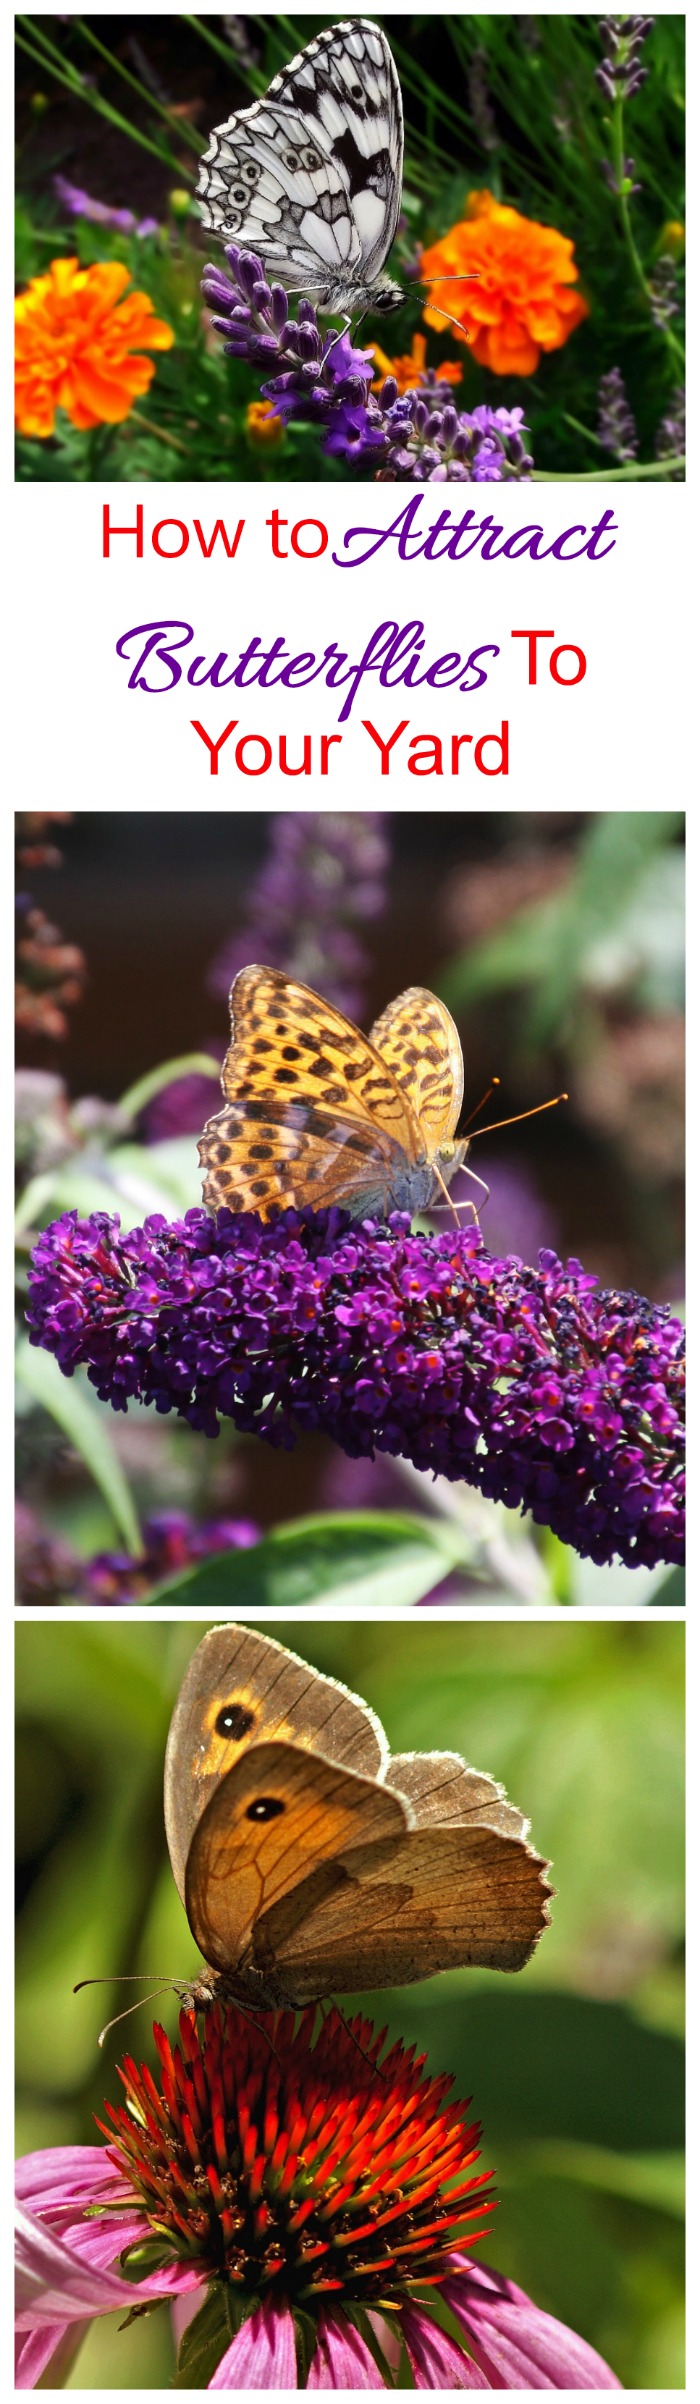 جذب الفراشات - نصائح لجذب الفراشات إلى حديقتك مثل المغناطيس